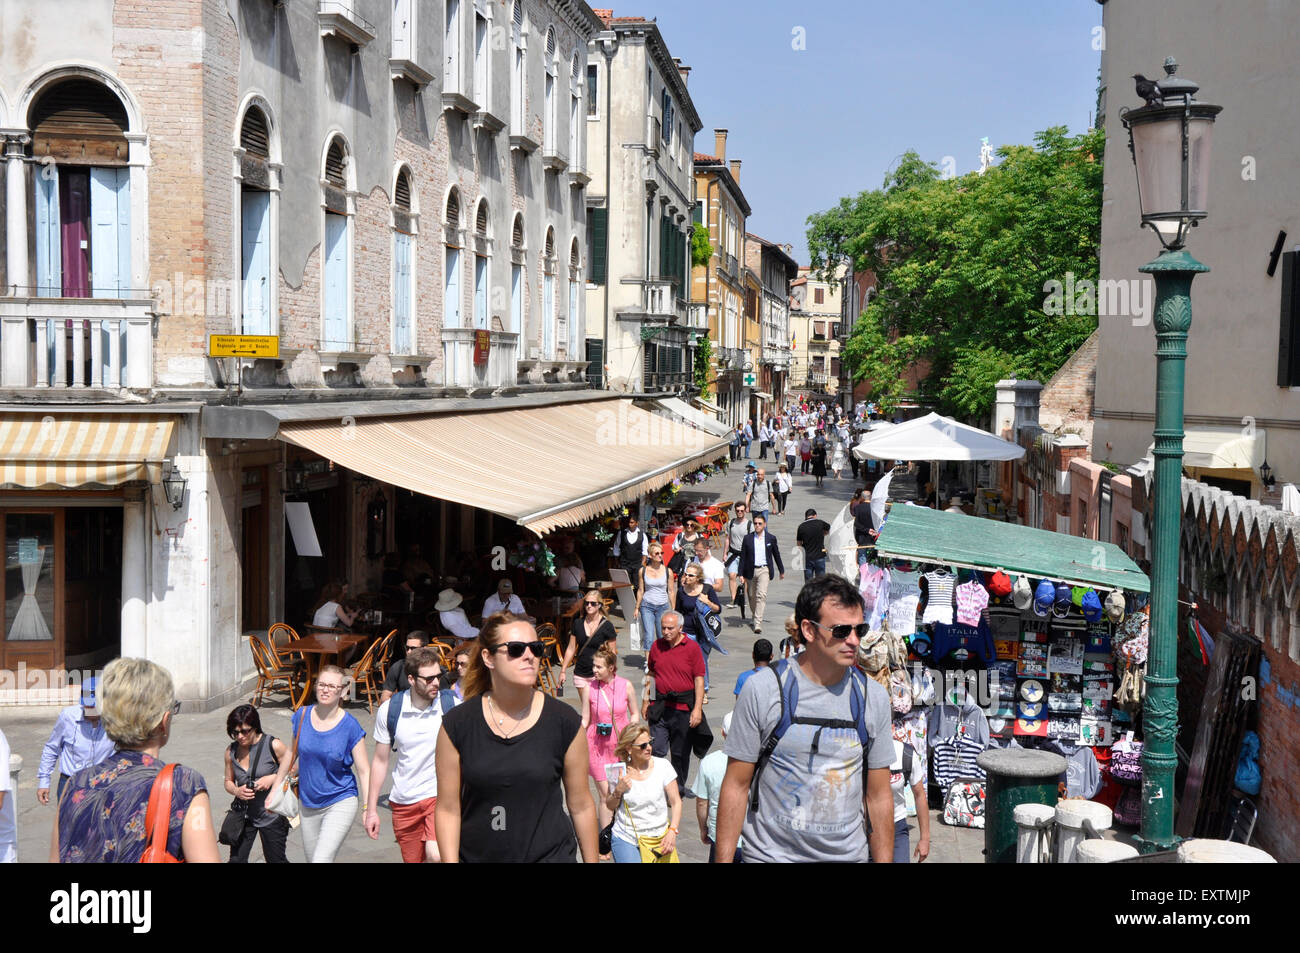 Italy - Venice - Cannaregio region - busy scene on the Strada Nova - the main shopping street - shoppers market stalls sunshine Stock Photo